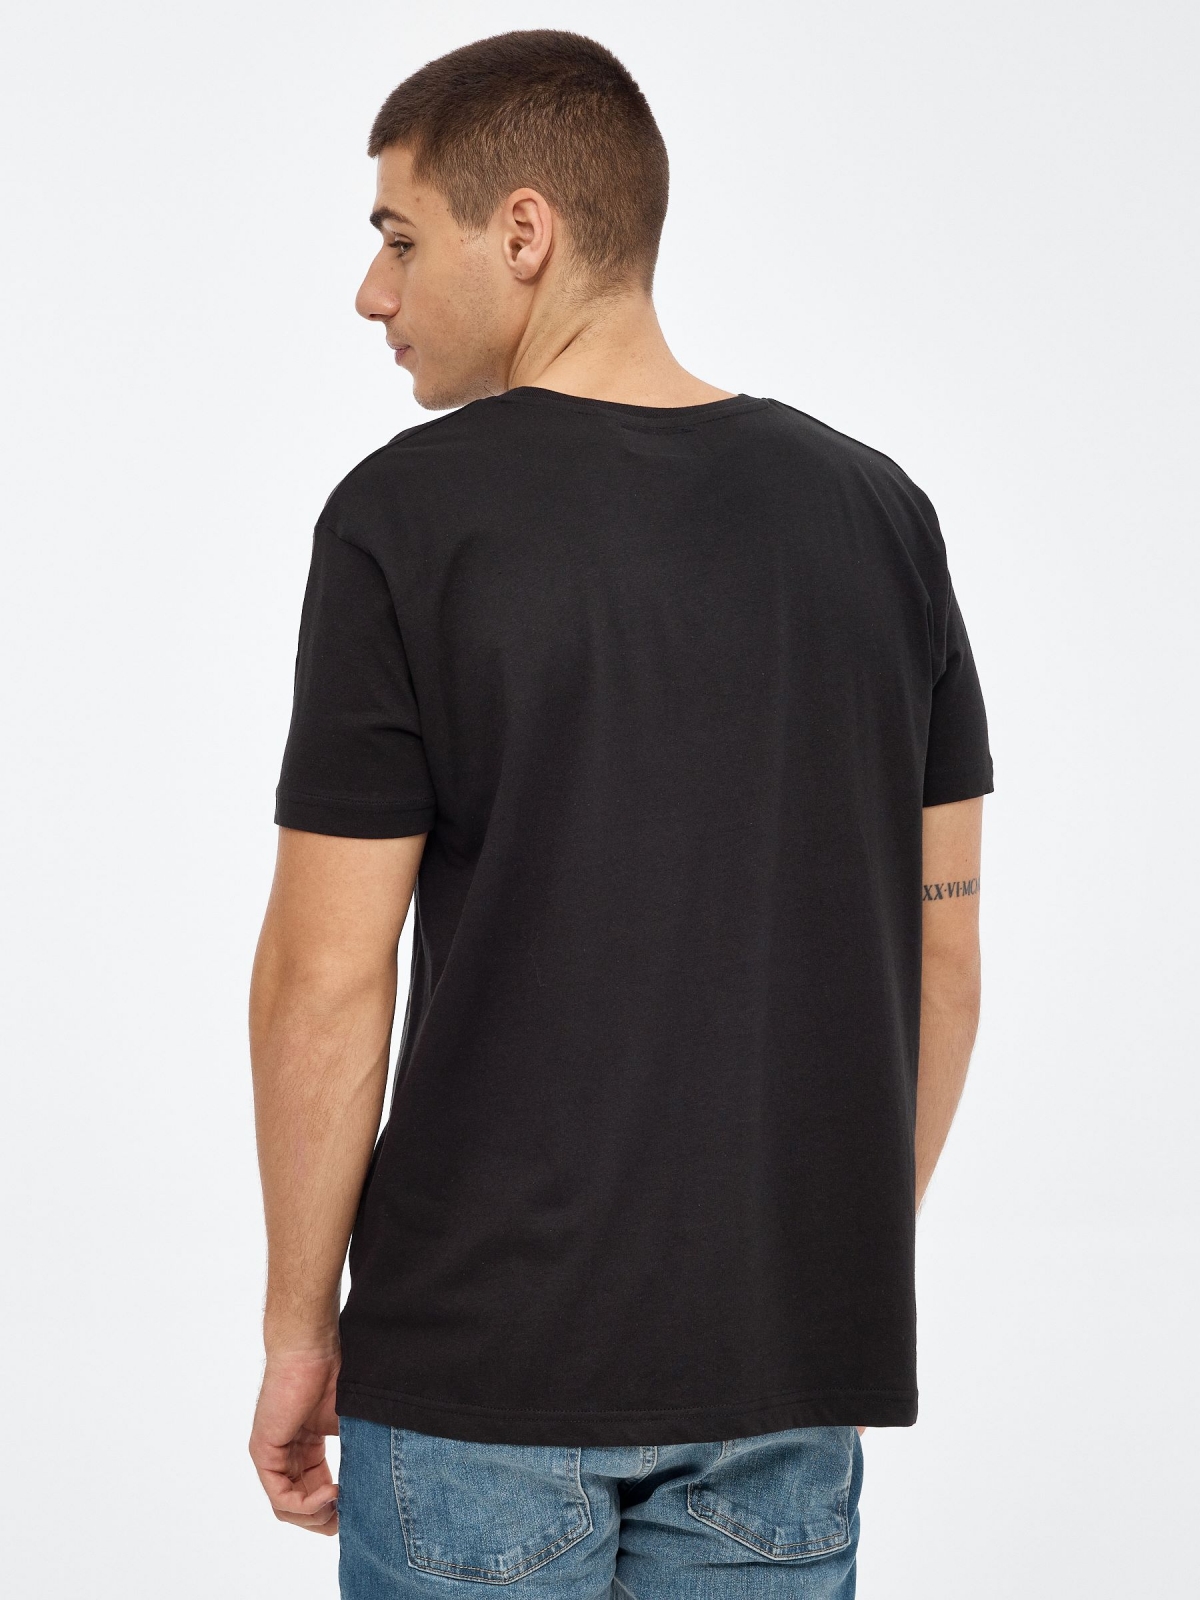 T-shirt com crânio impresso preto vista meia traseira